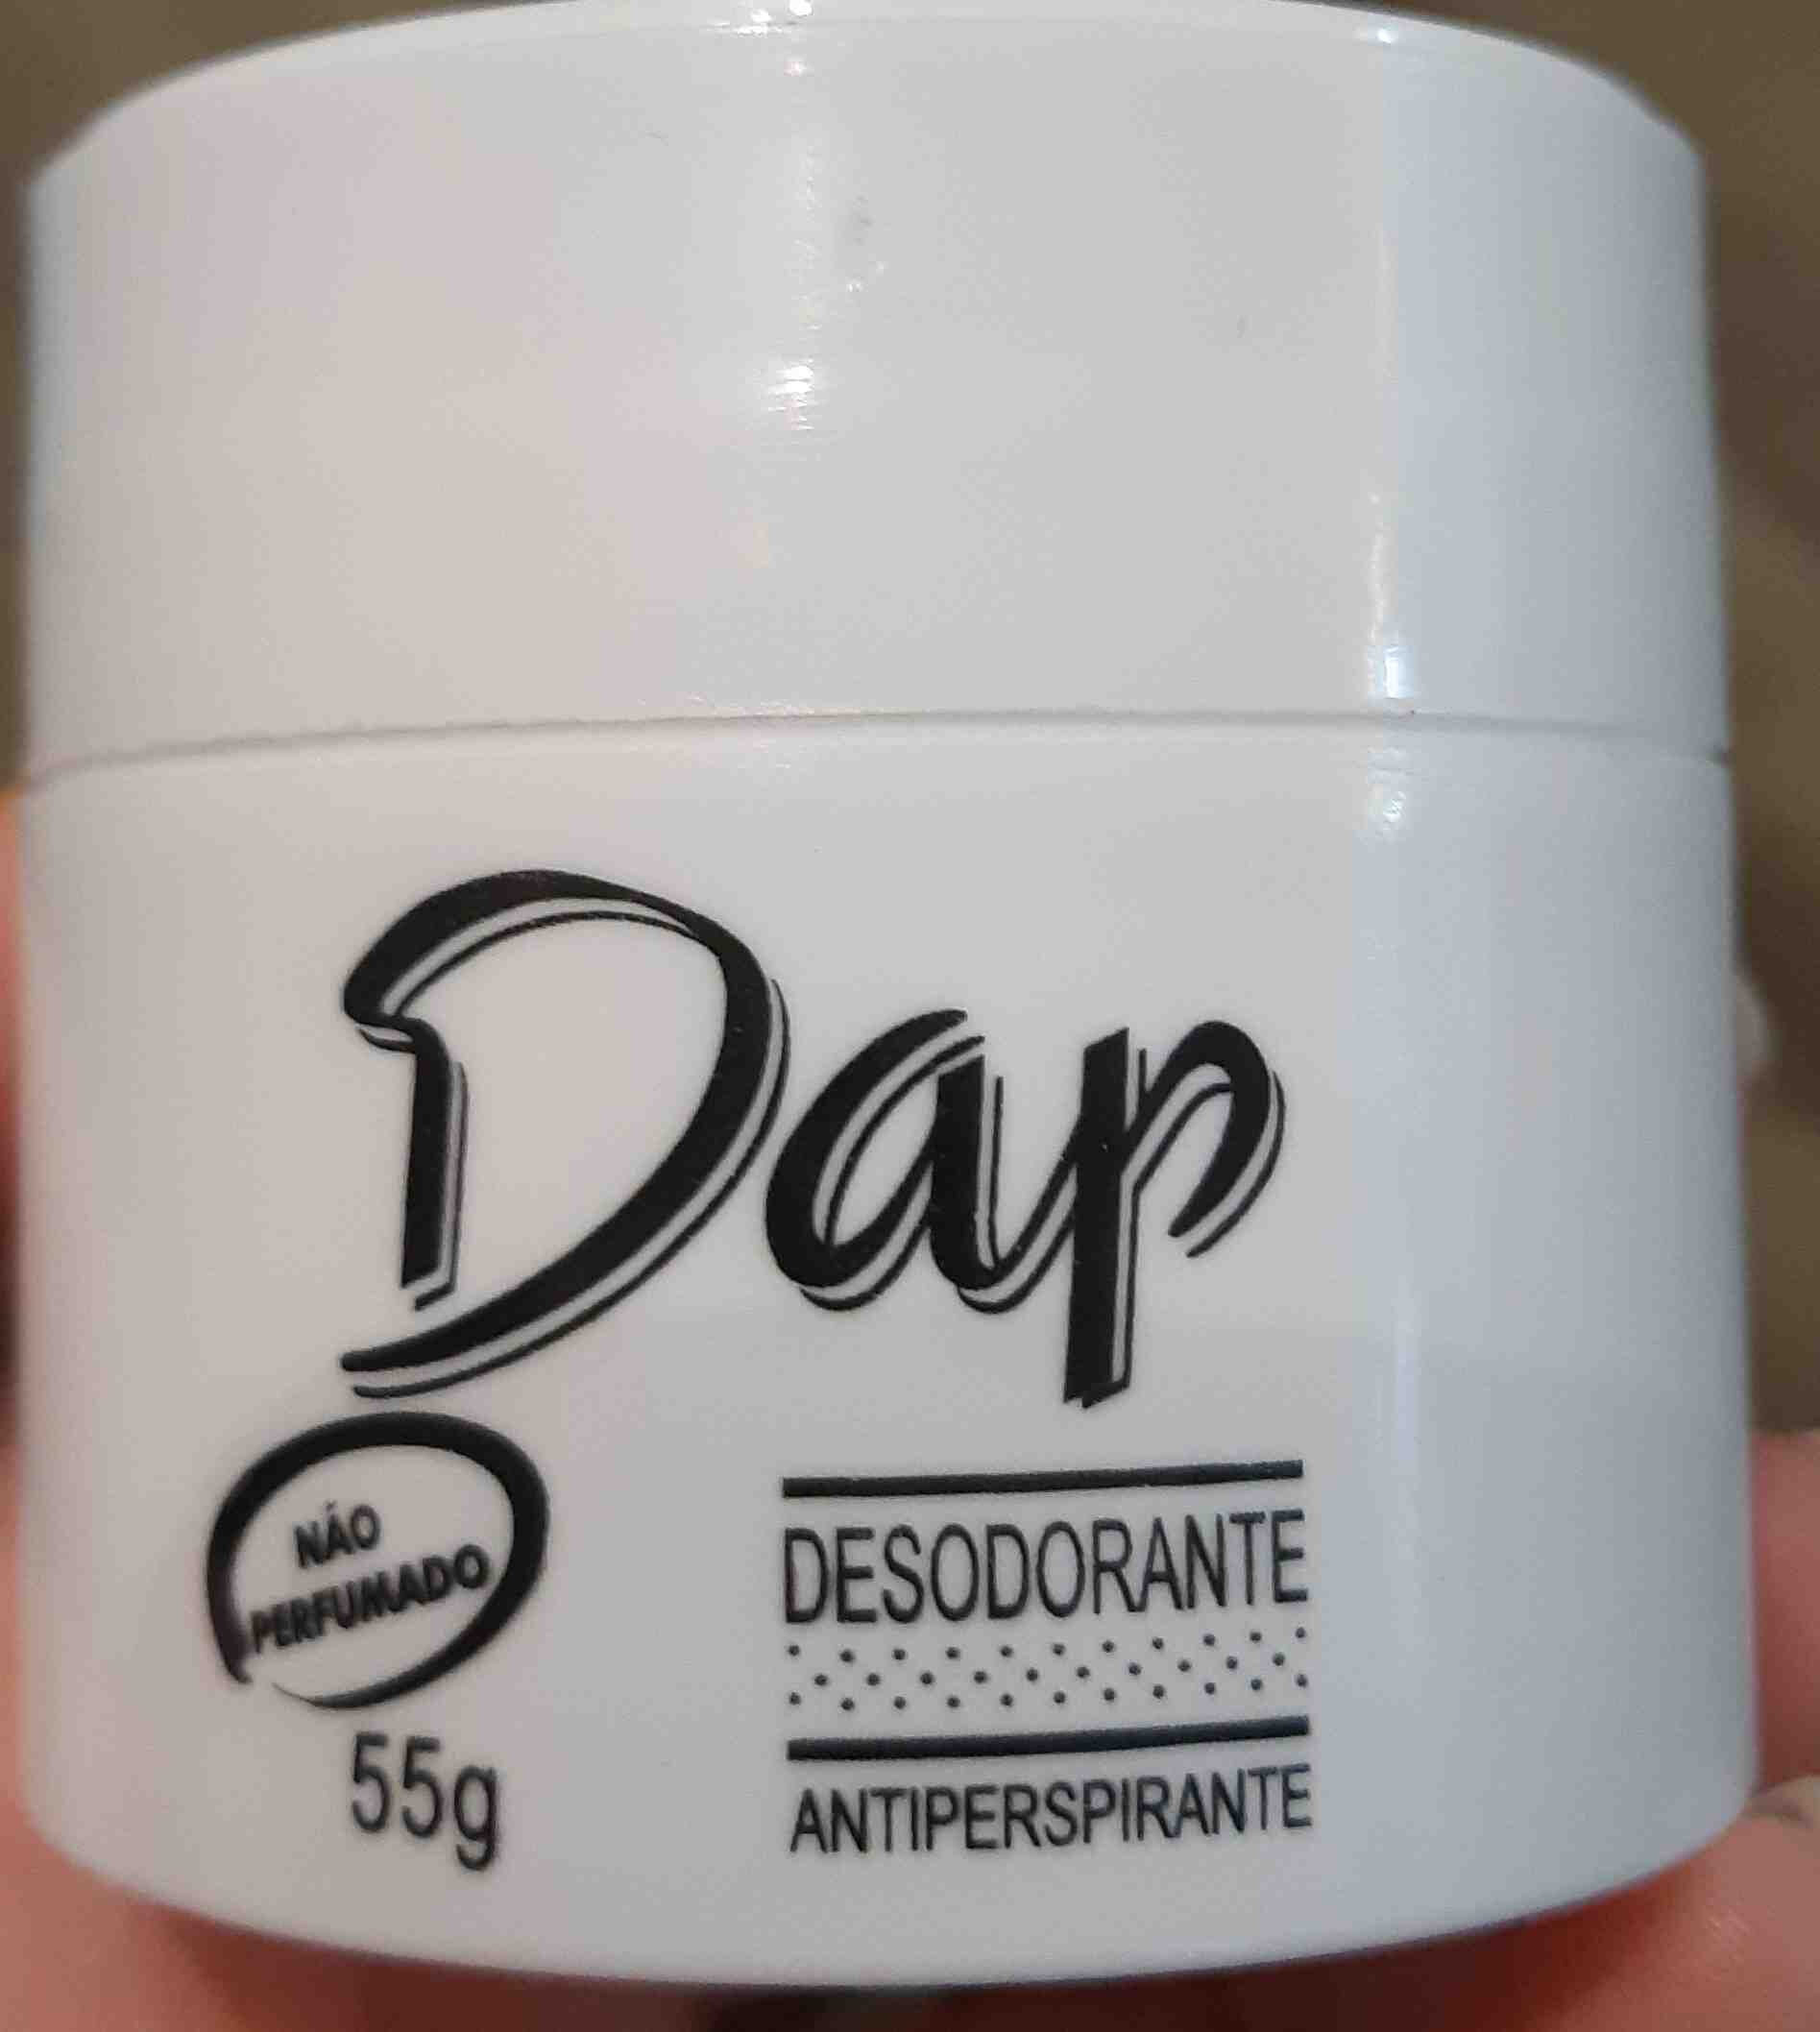 Dap desodorante - Produktas - en